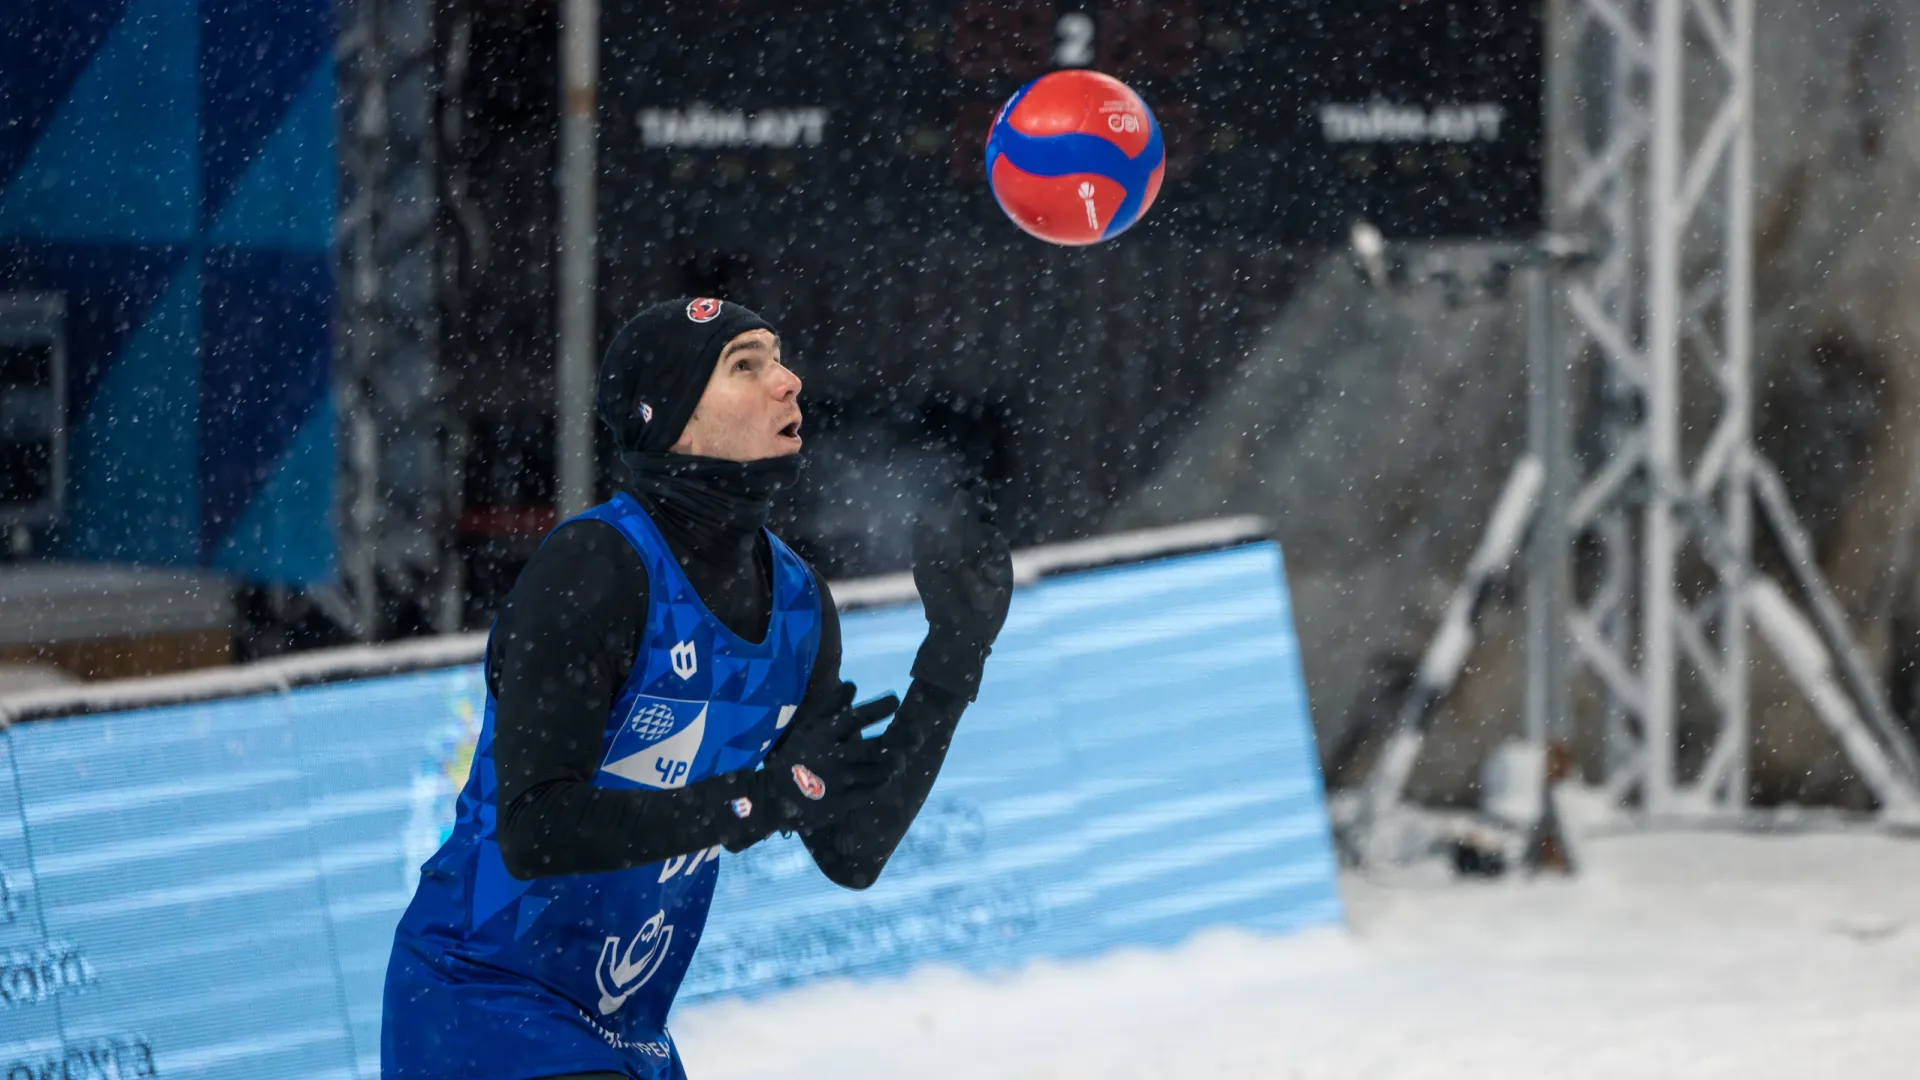 В зимнем волейболе играют в яркий мяч: обычный сливается со снегом. Фото: Сергей Зубков / «Ямал-Медиа»